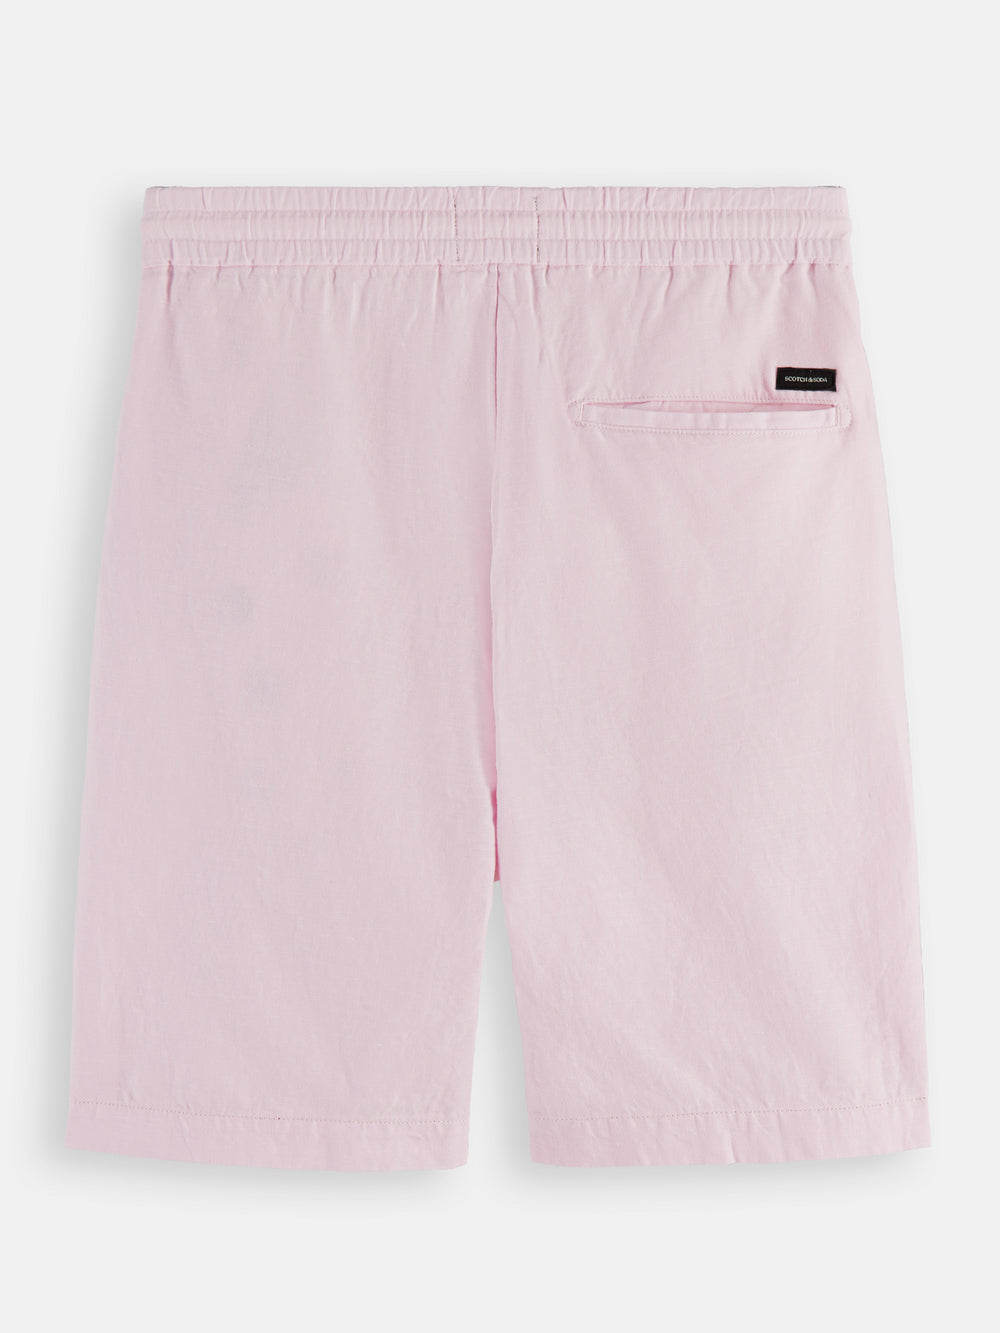 Fave cotton-linen shorts - Scotch & Soda AU